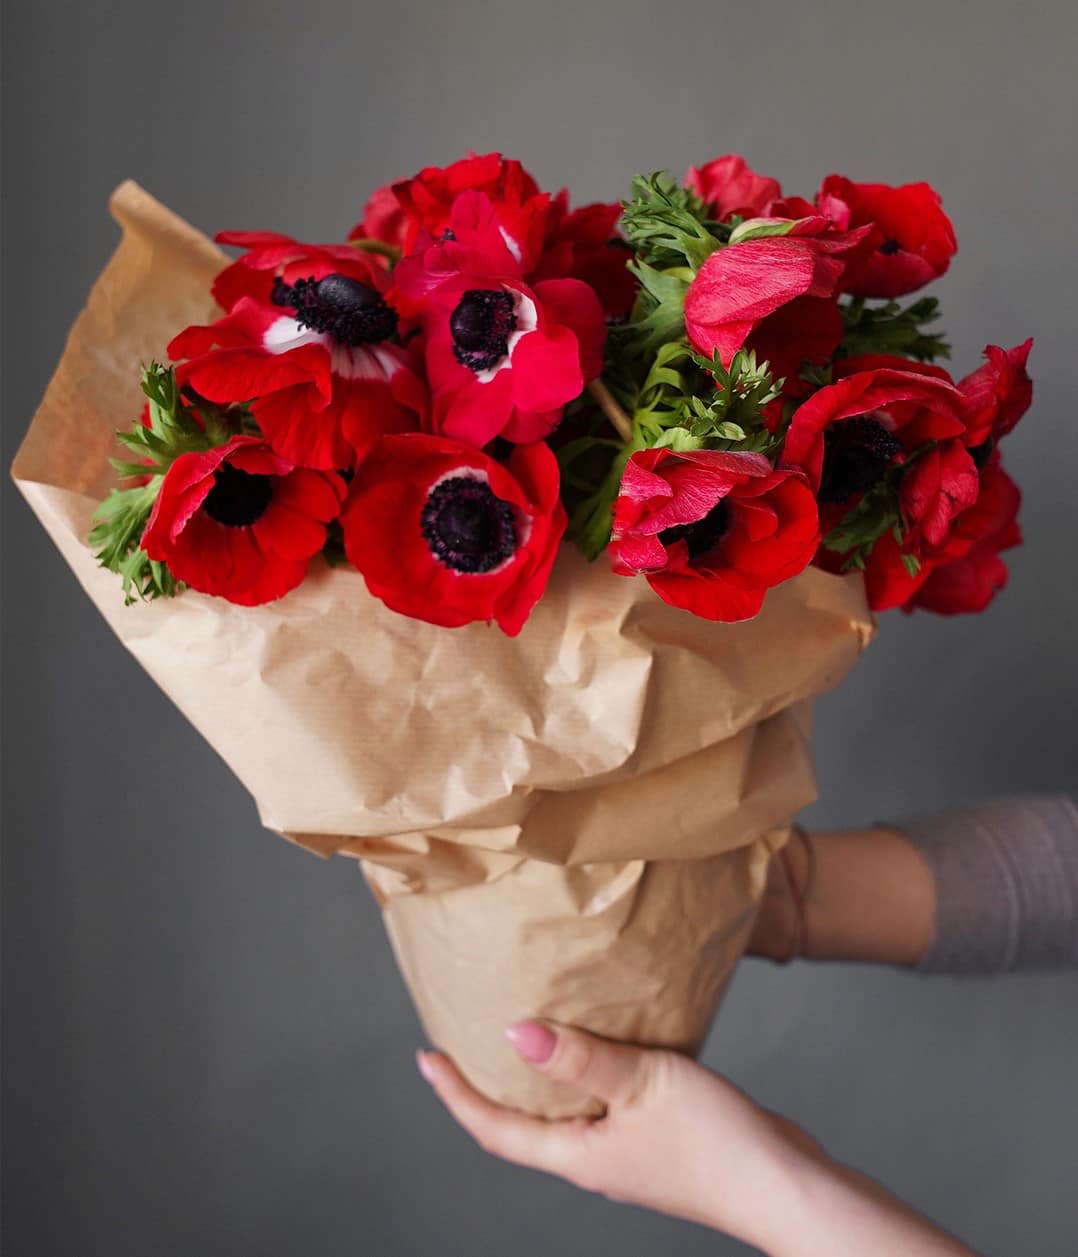  بسته بندی با کاغذ کرافت برای دورپیچ گلدان